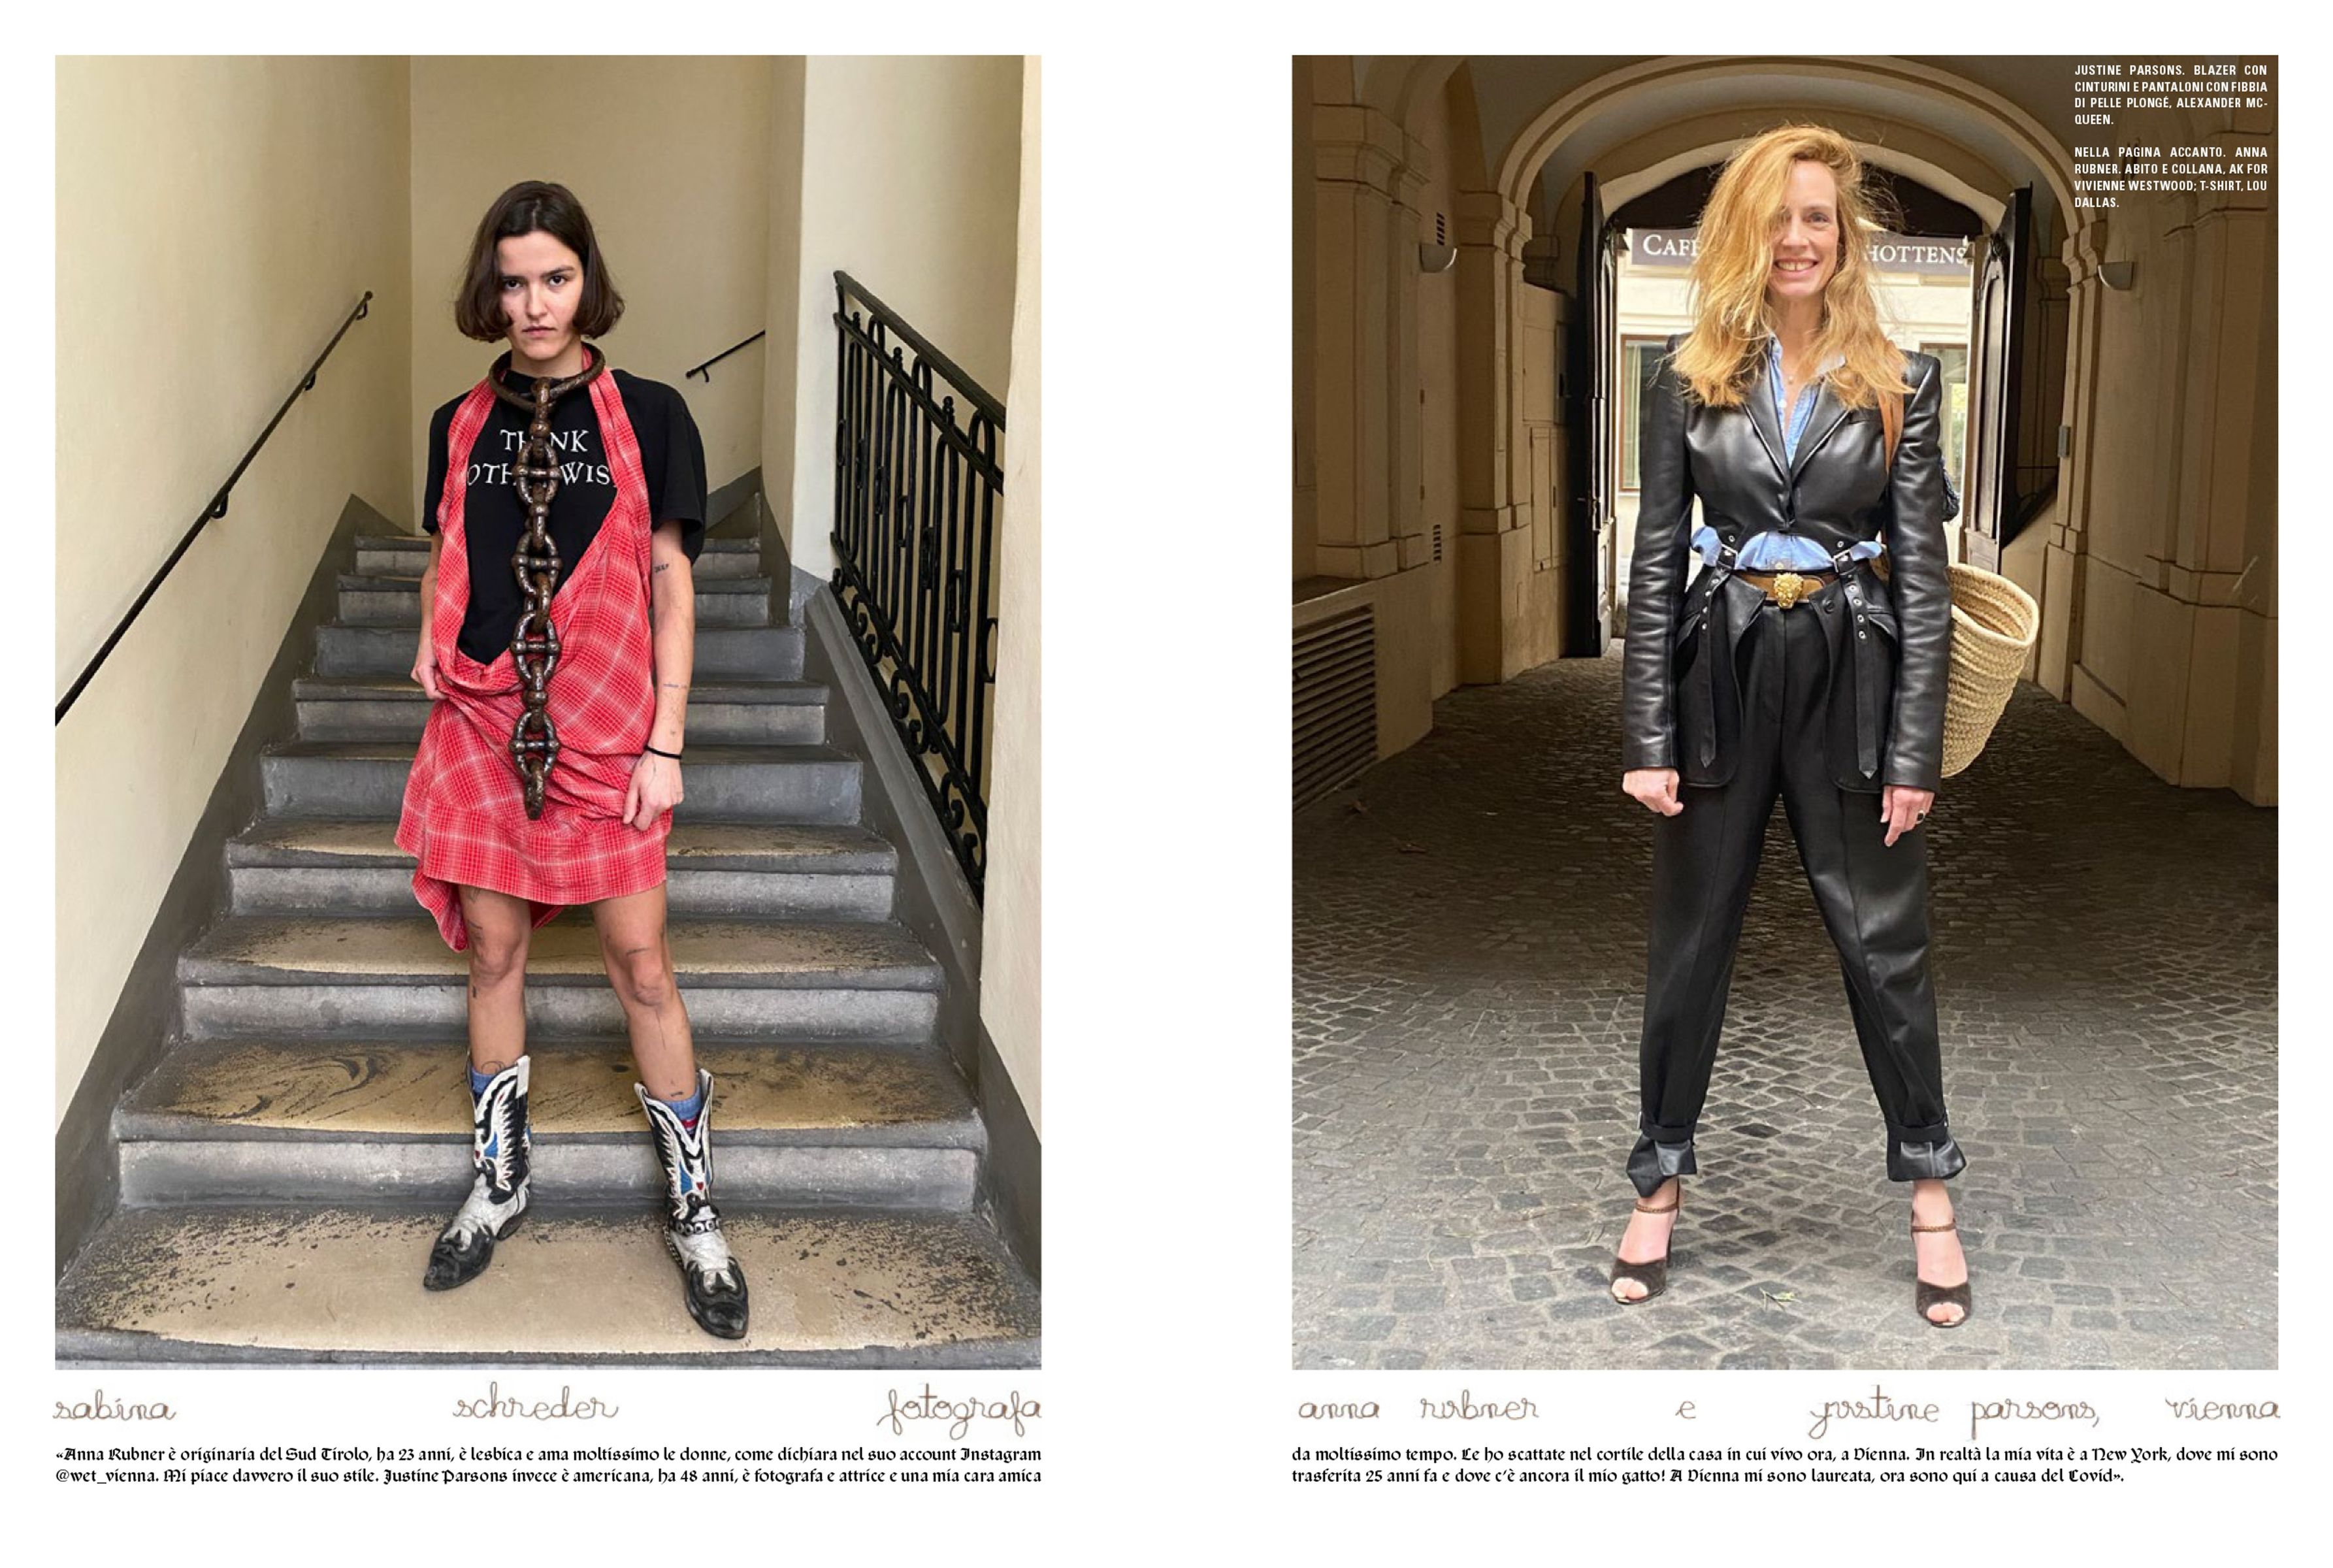 Vogue Italia - Sabina Schreder styled by Sabina Schreder